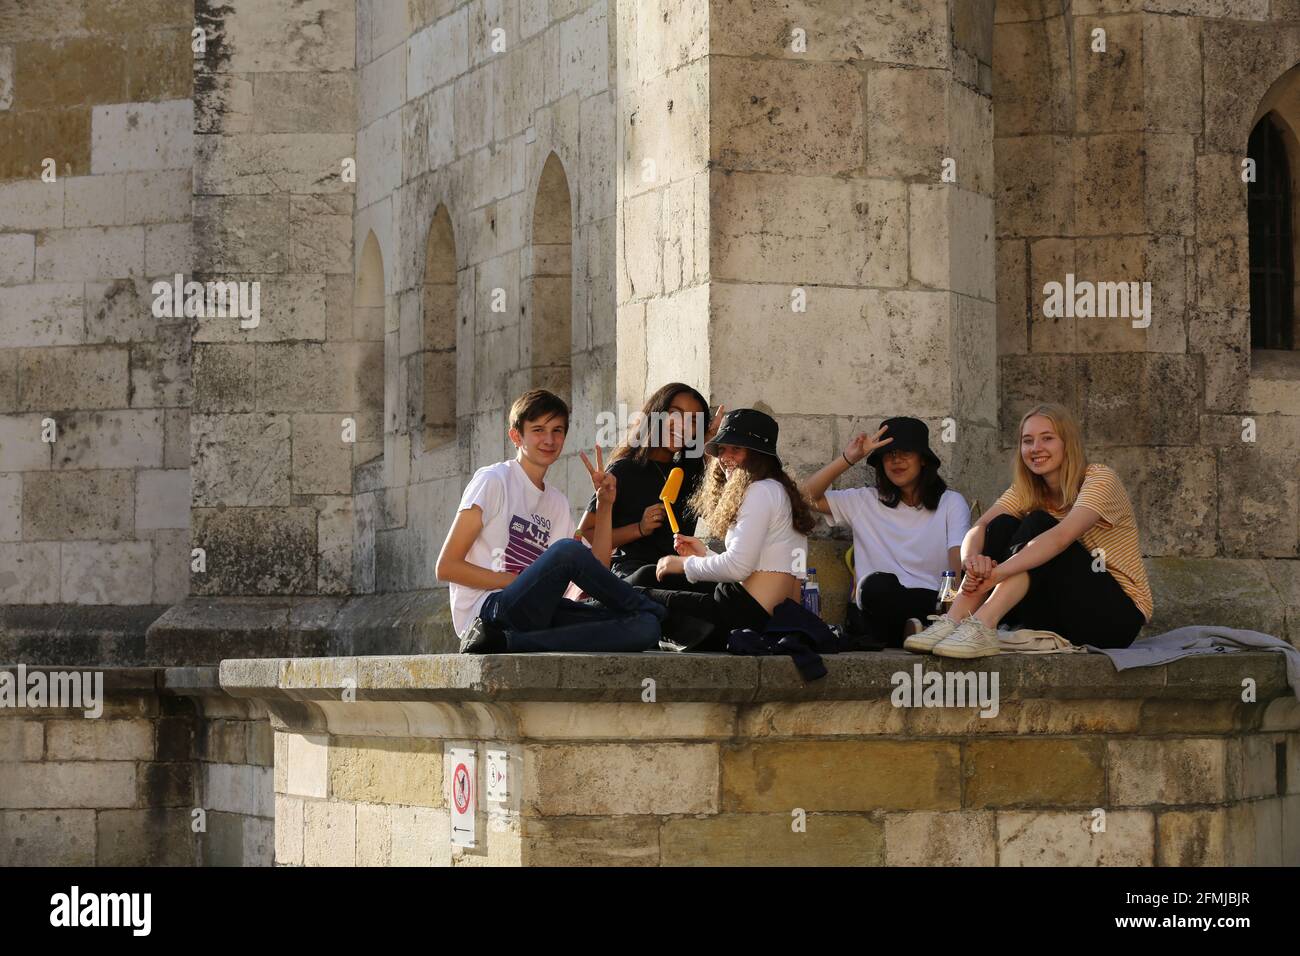 Regensburg Innenstadt oder City mit jungen Menschen die vor dem Dom sitzen Foto Stock